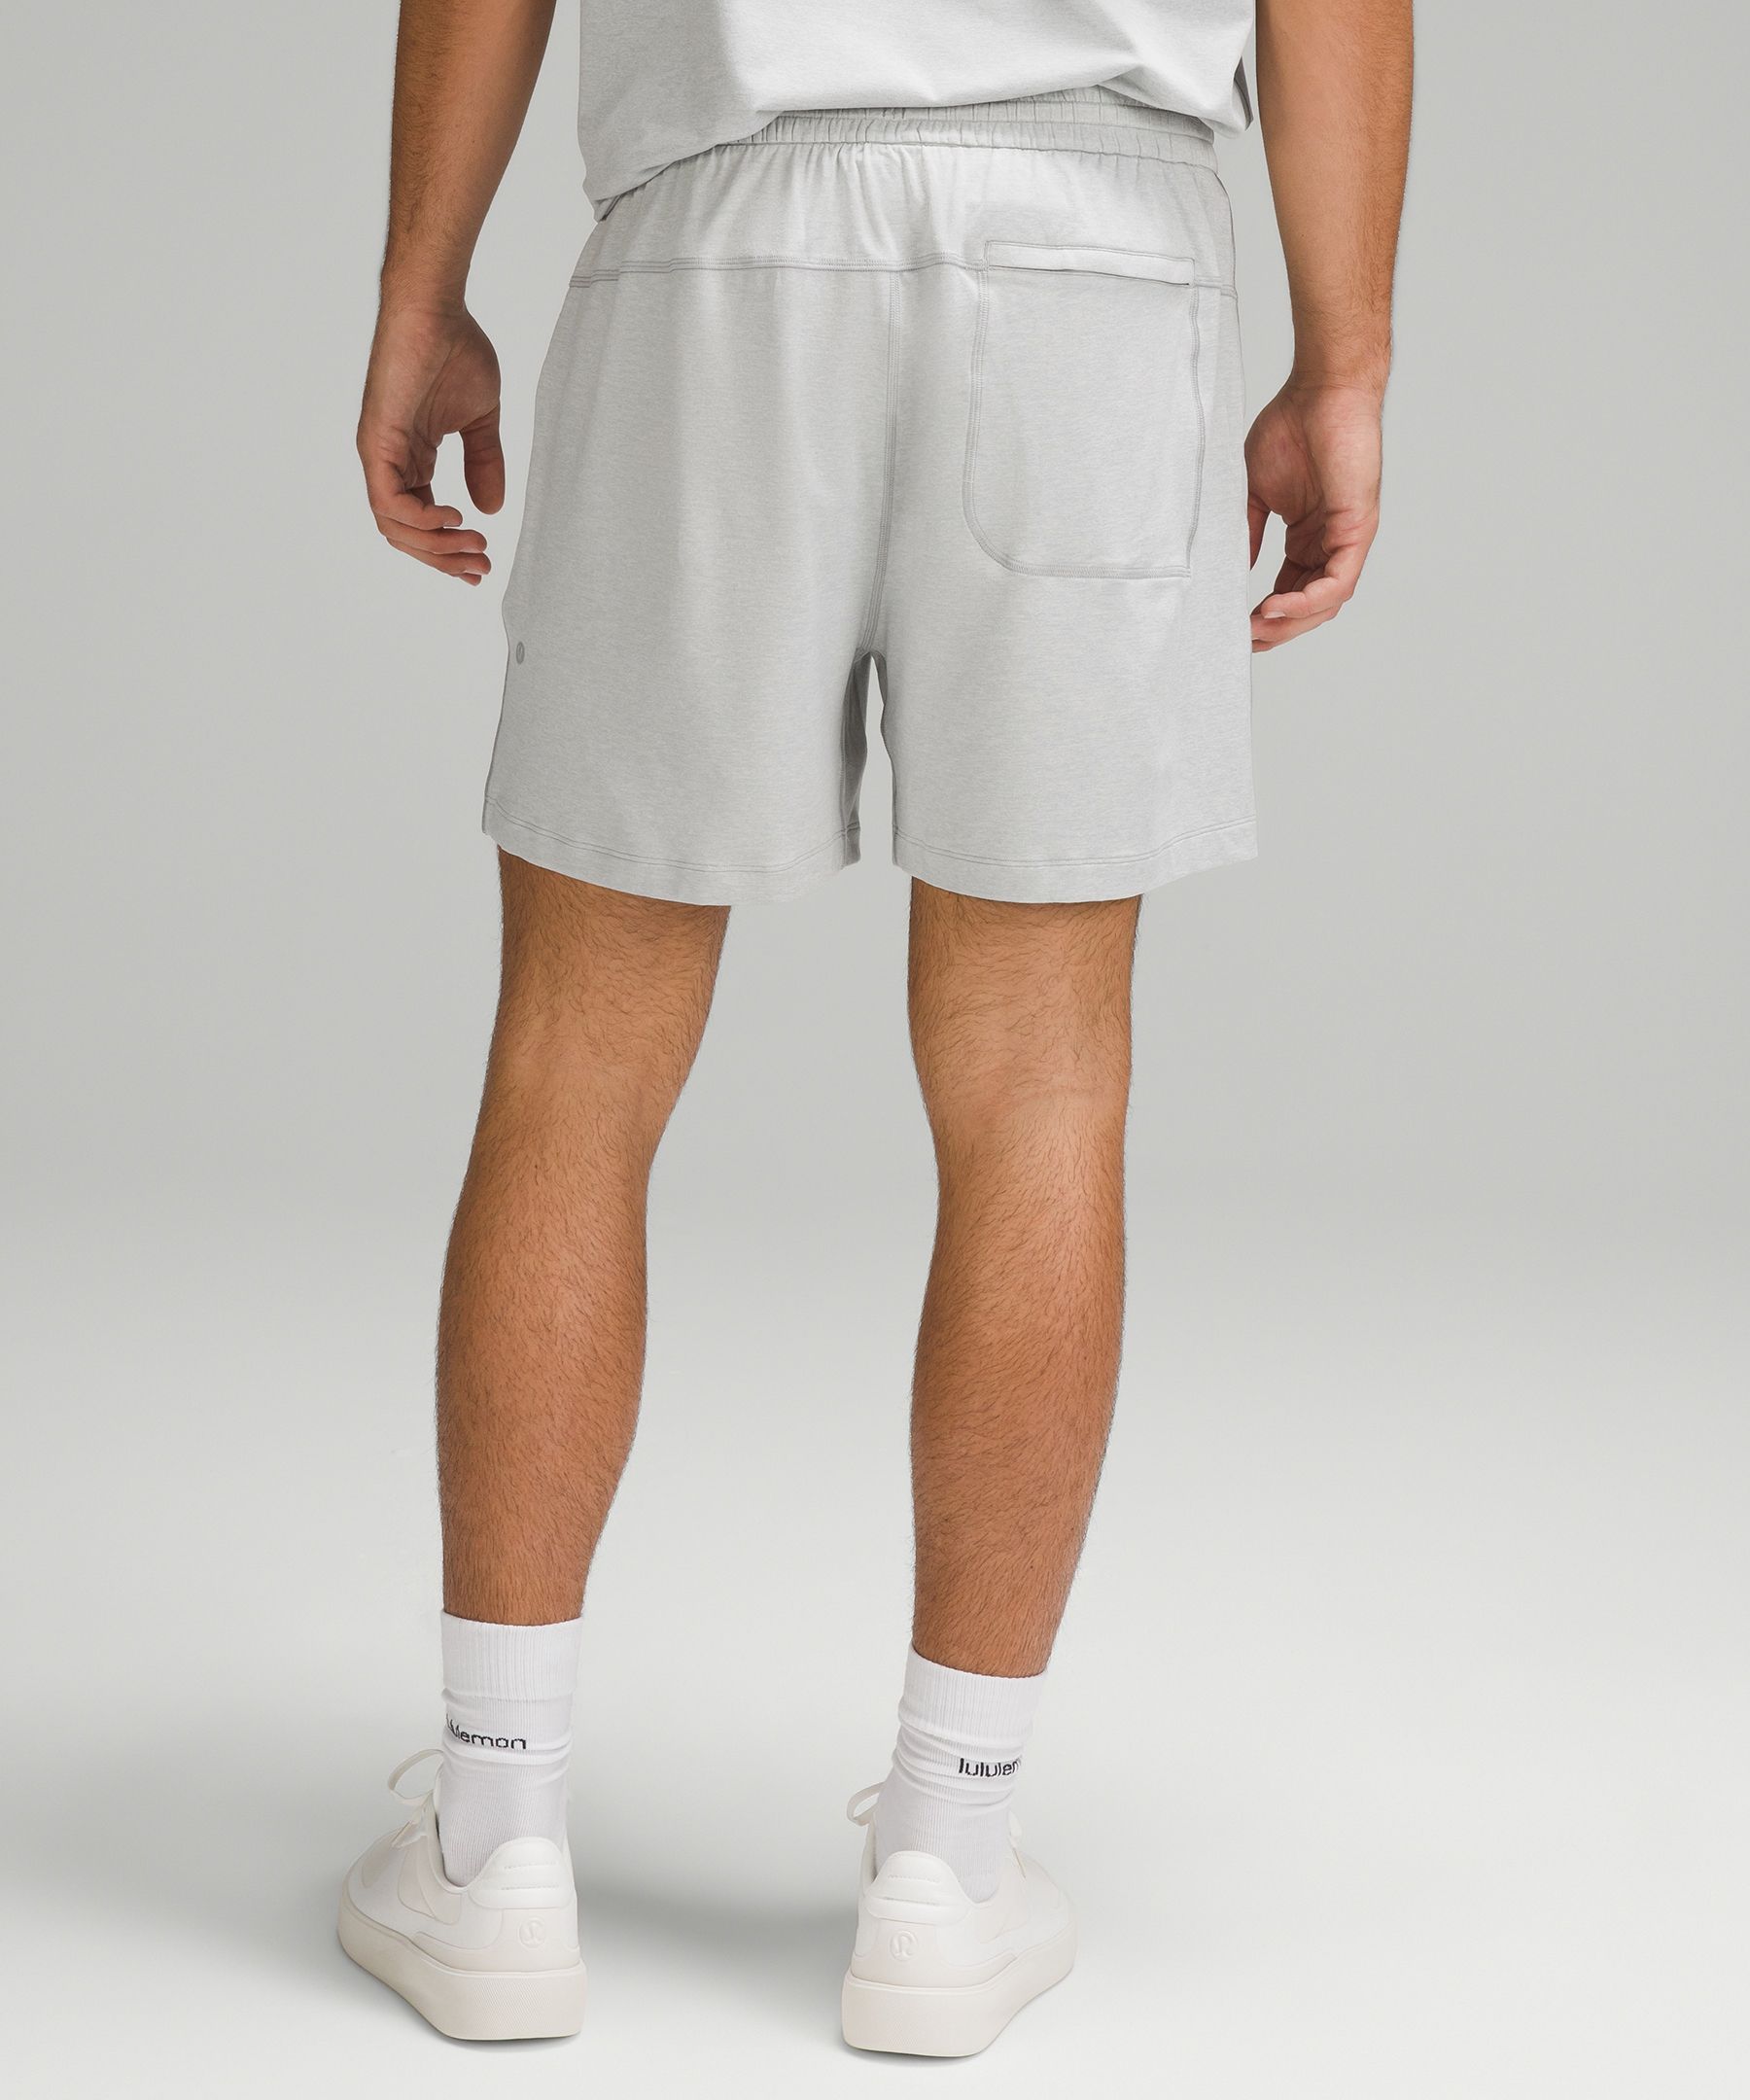 Shop Lululemon Soft Jersey Shorts 5"